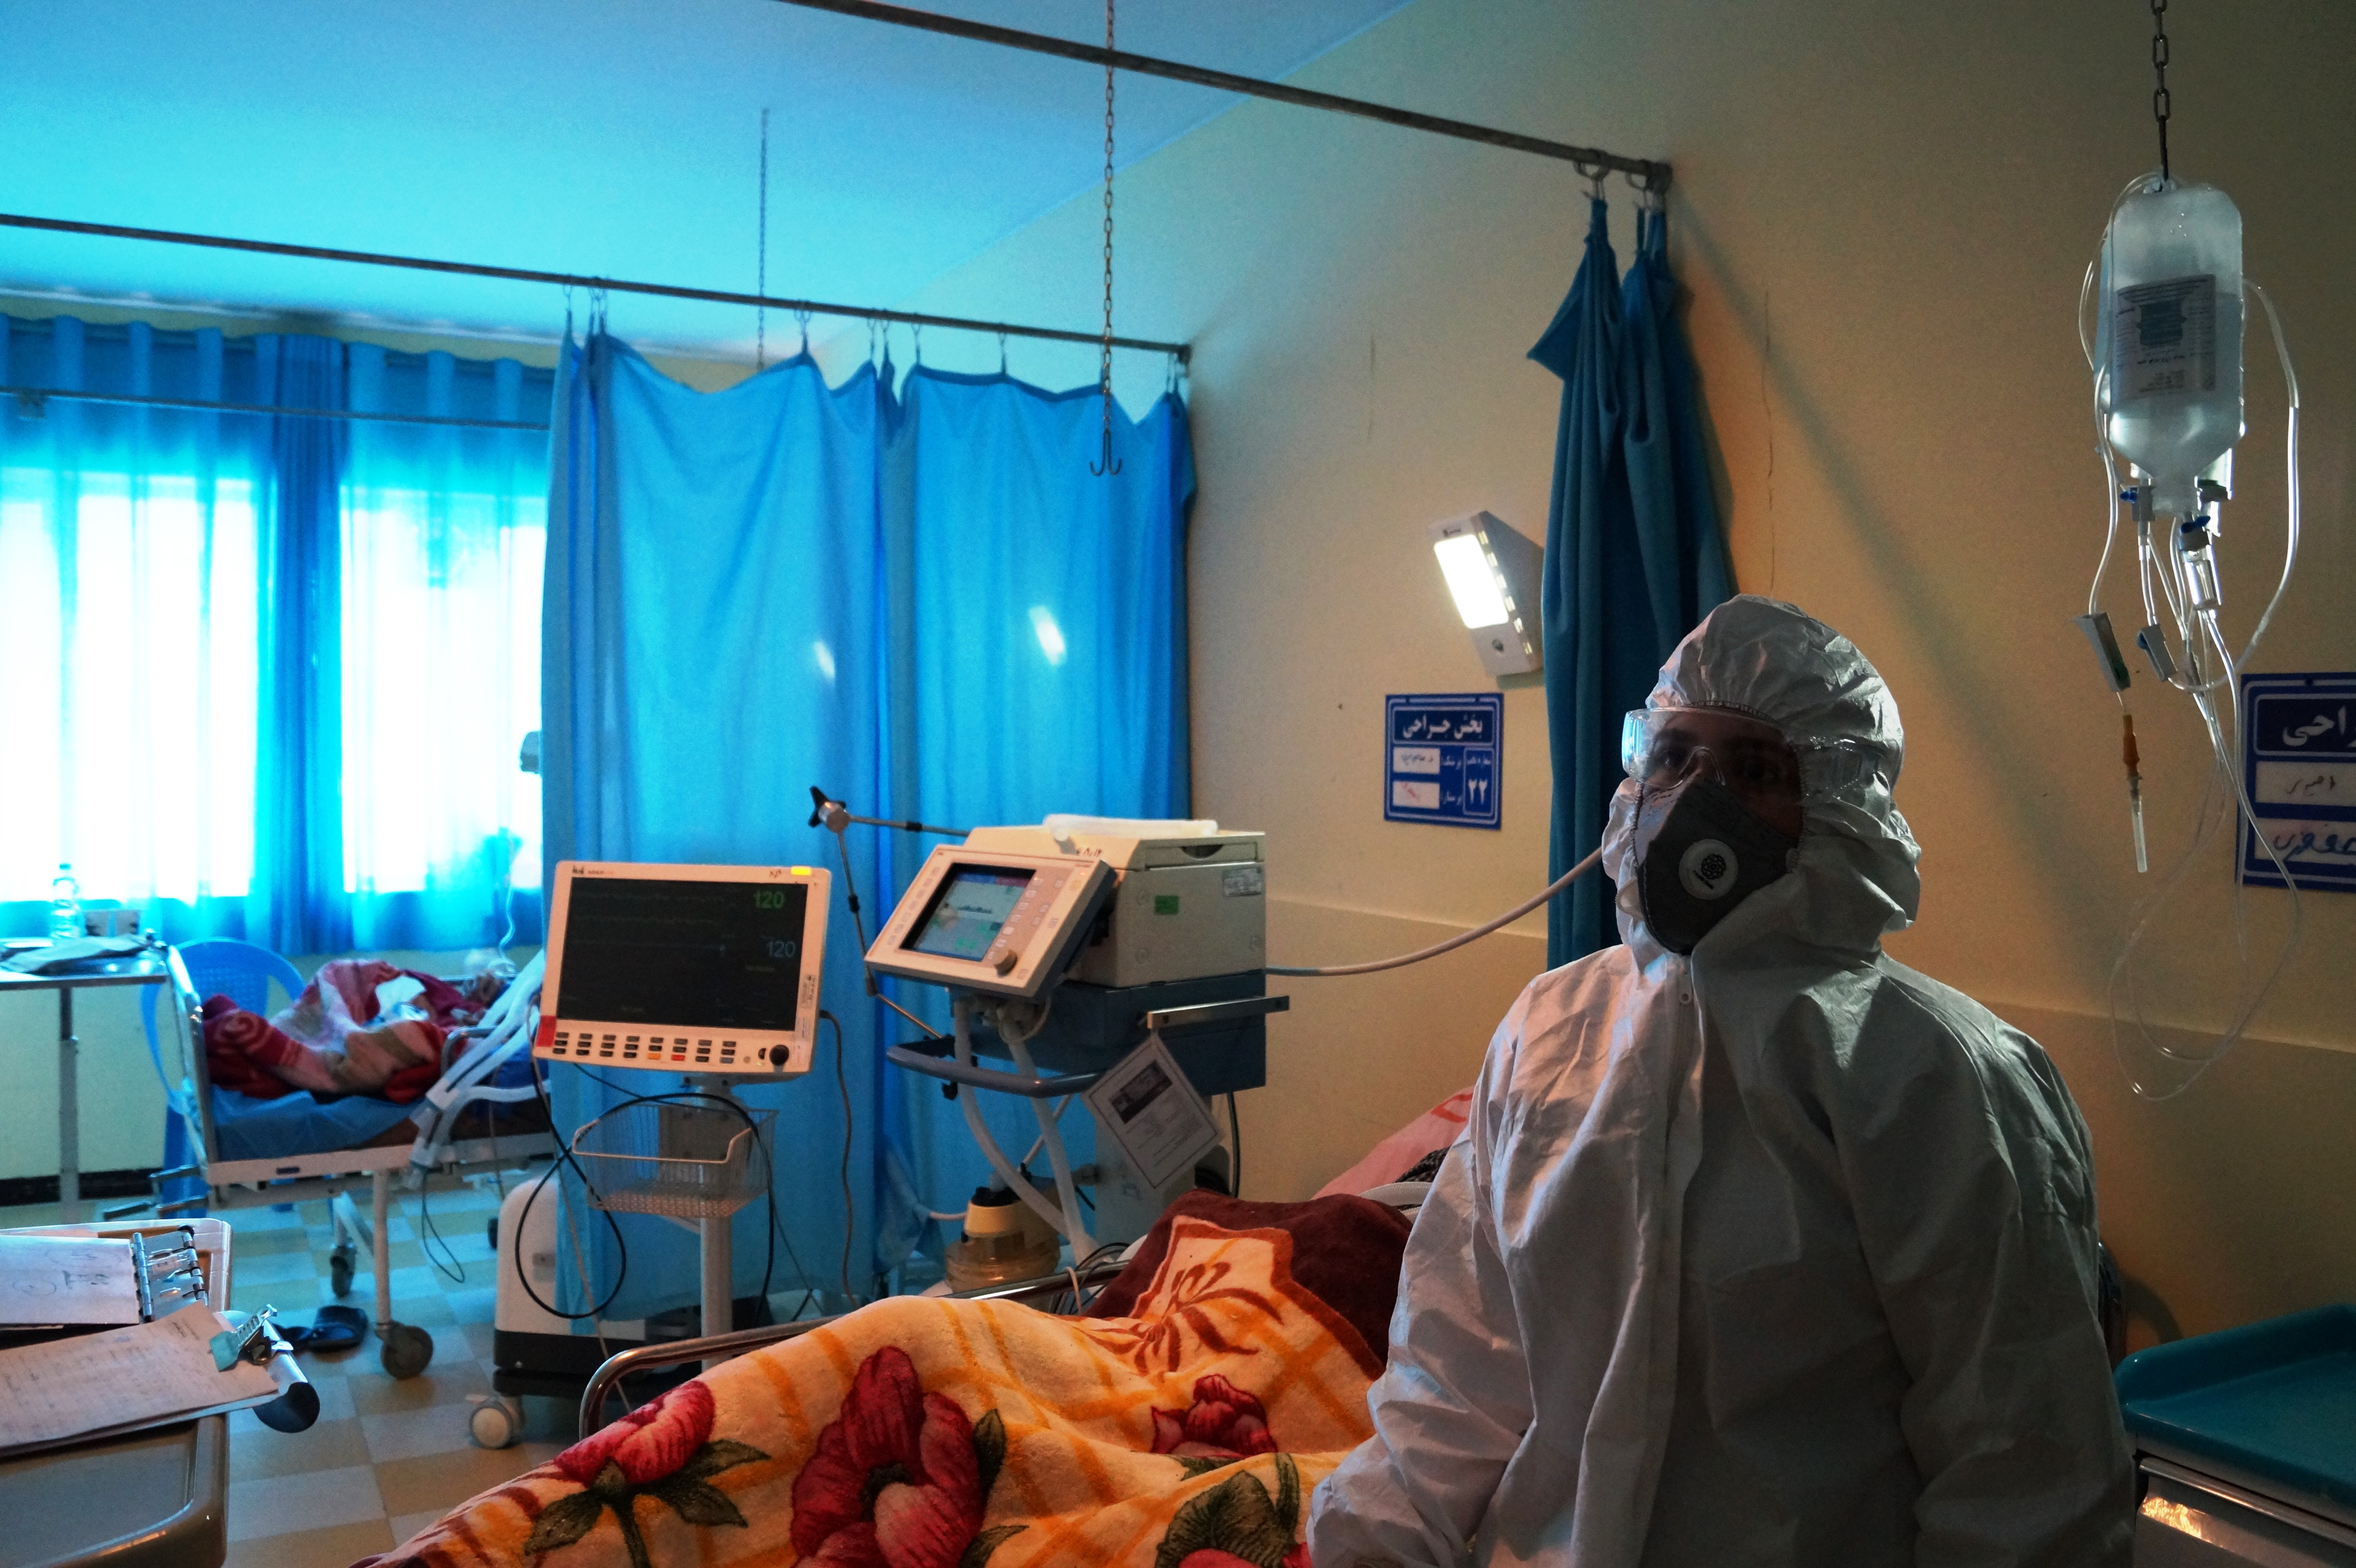 شرکت فولاد کردستان به همیاری بیمارستان قروه آمد/تهیه دستگاه اکسیژن و ونتیلاتور